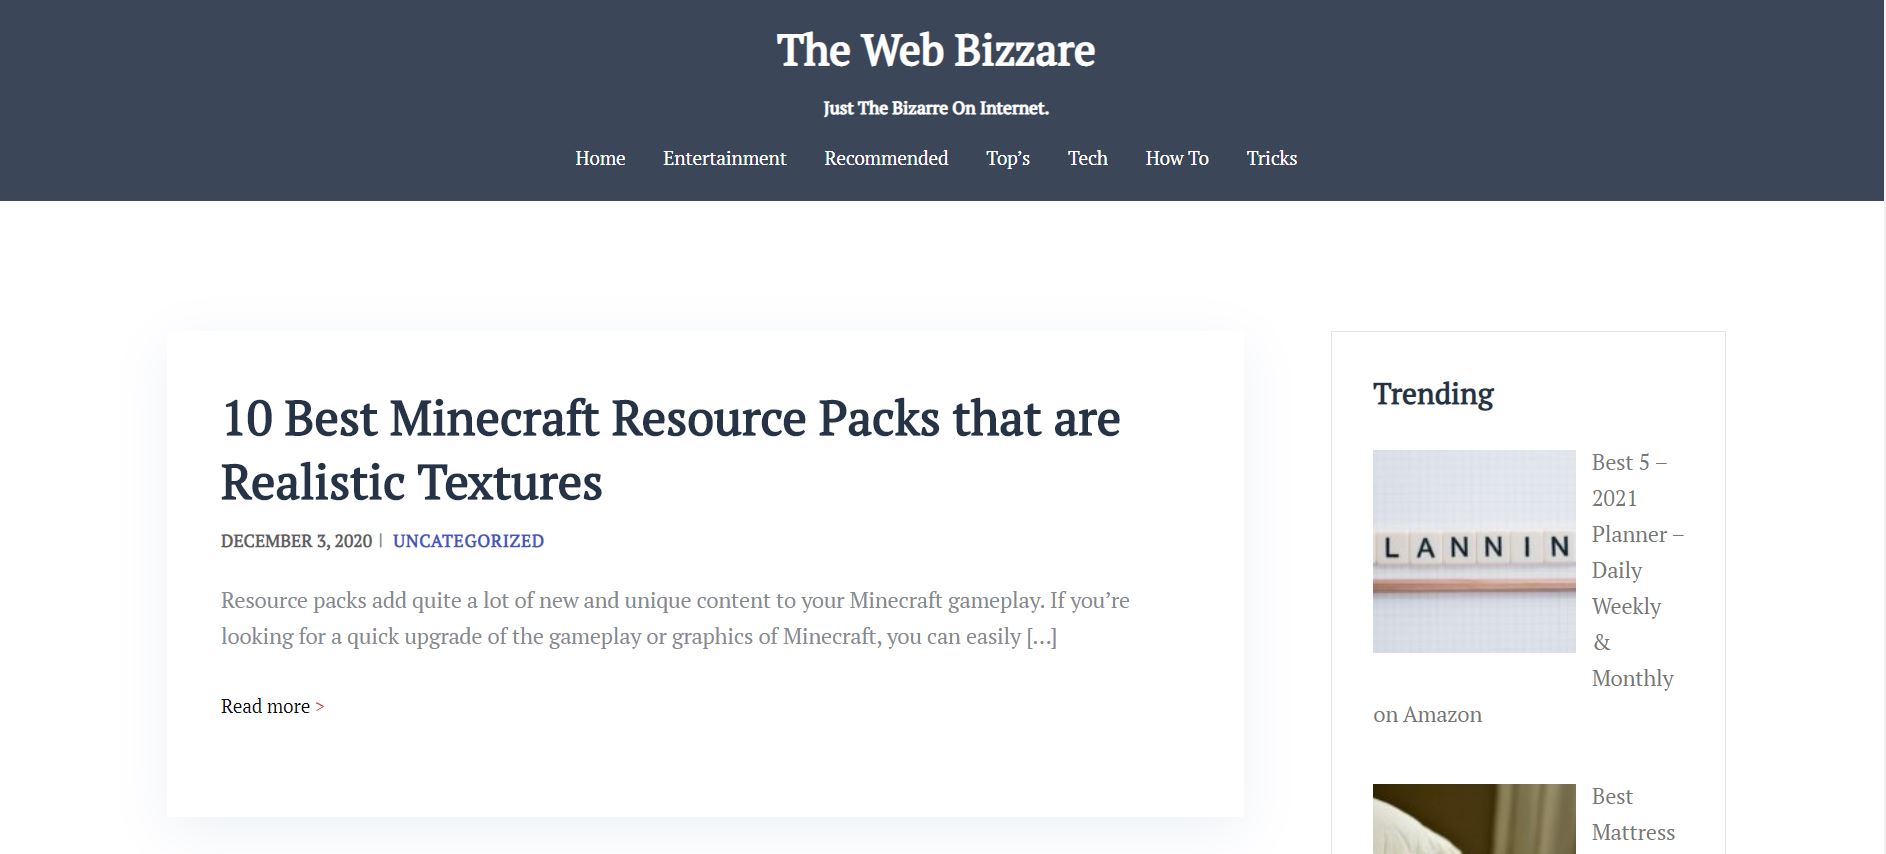 The Web Bizzare